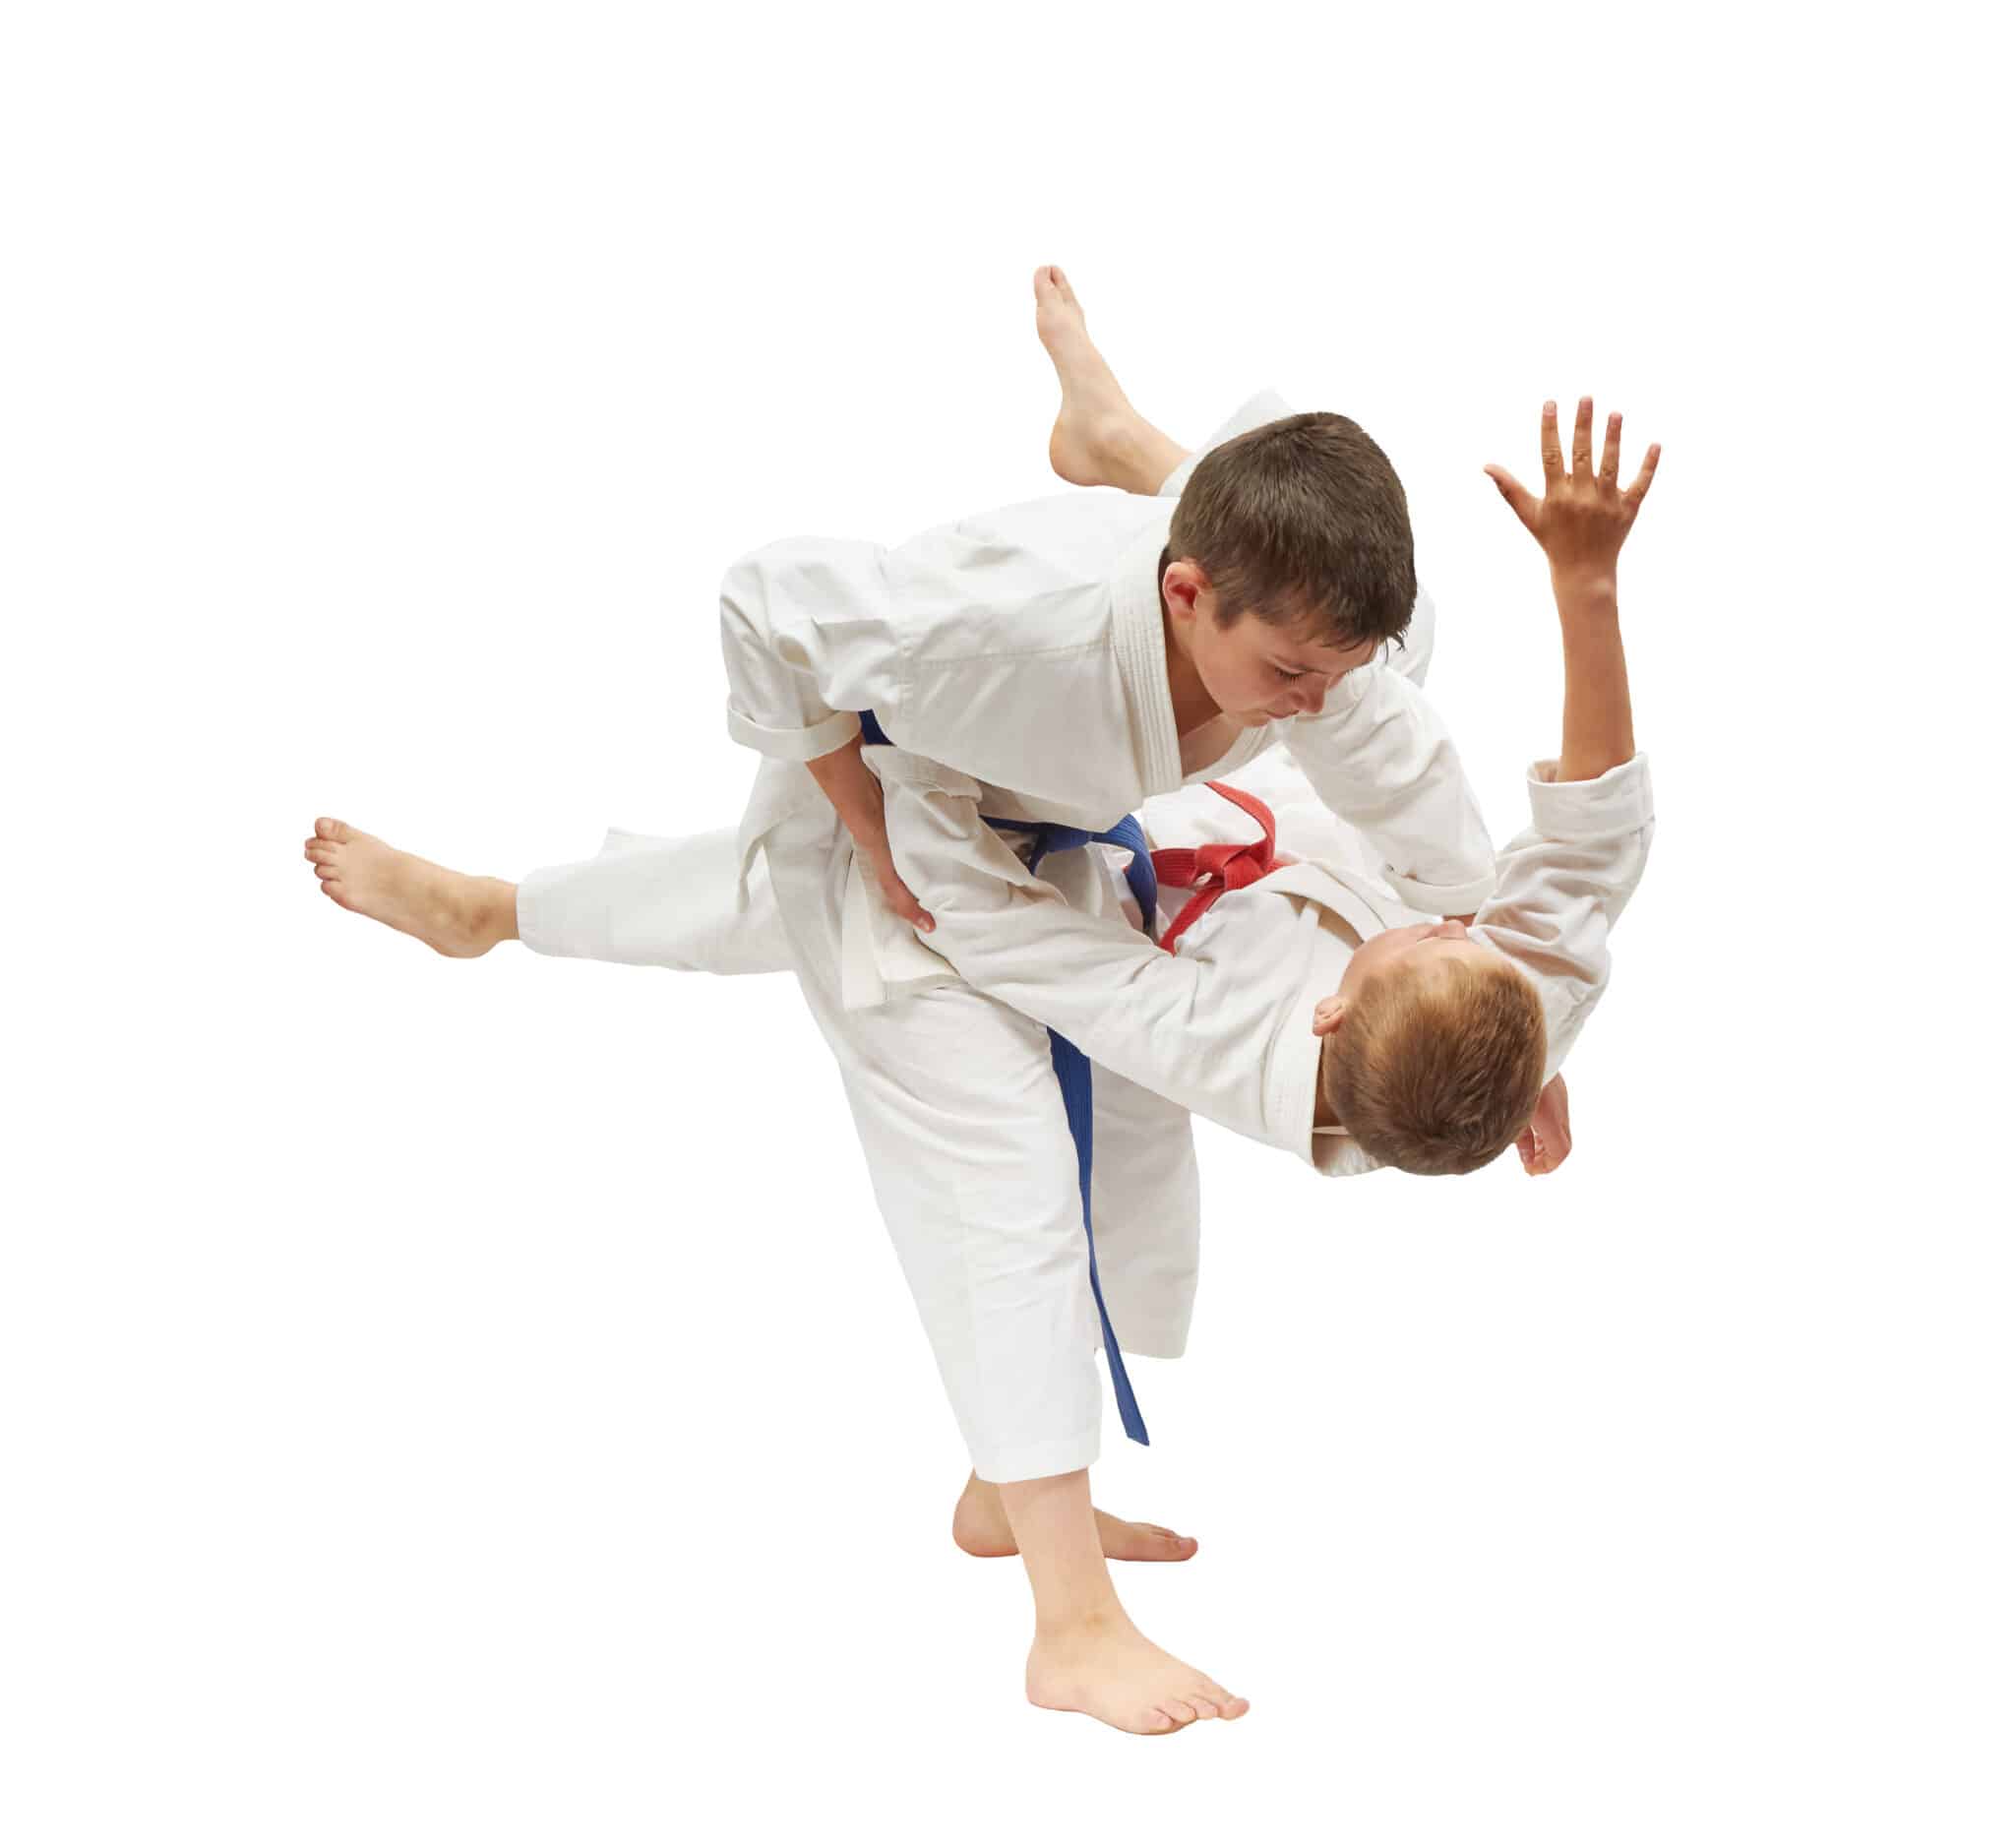 Key Martial Arts Kids Jiu Jitsu